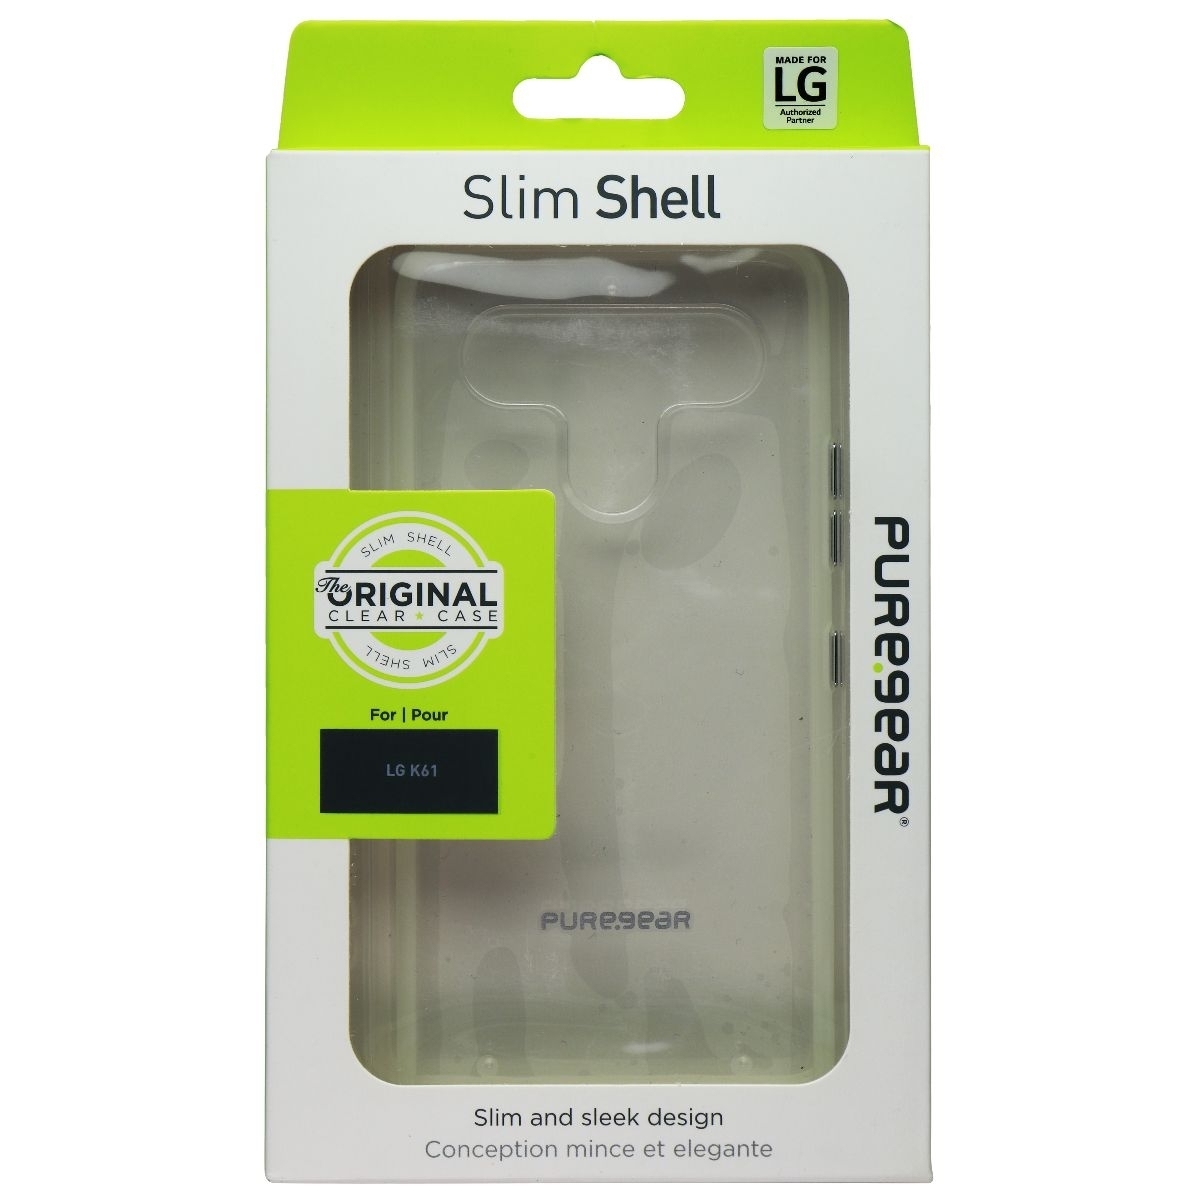 PureGear Slim Shell Case For LG K61 (2020) Smartphones - Clear (Refurbished)